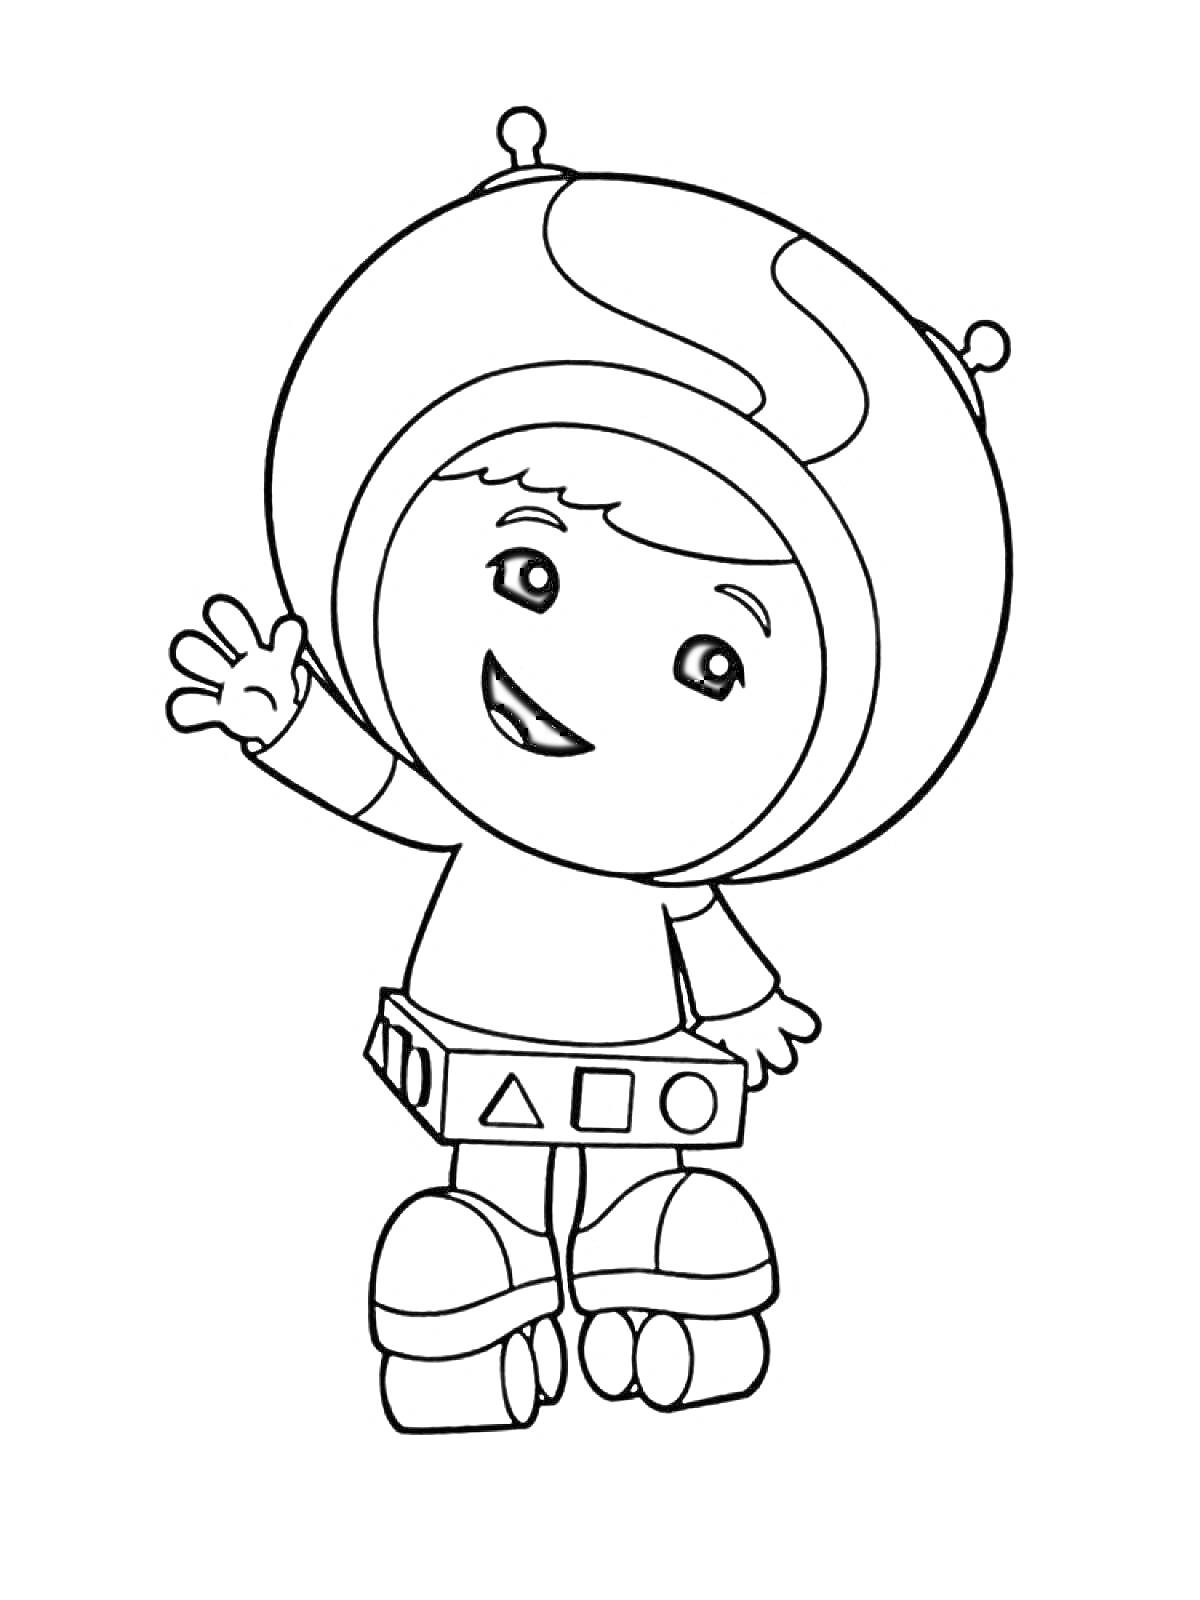 Раскраска Ребёнок в шлеме с антеннами, костюм с геометрическими фигурами, приветственное махание рукой.